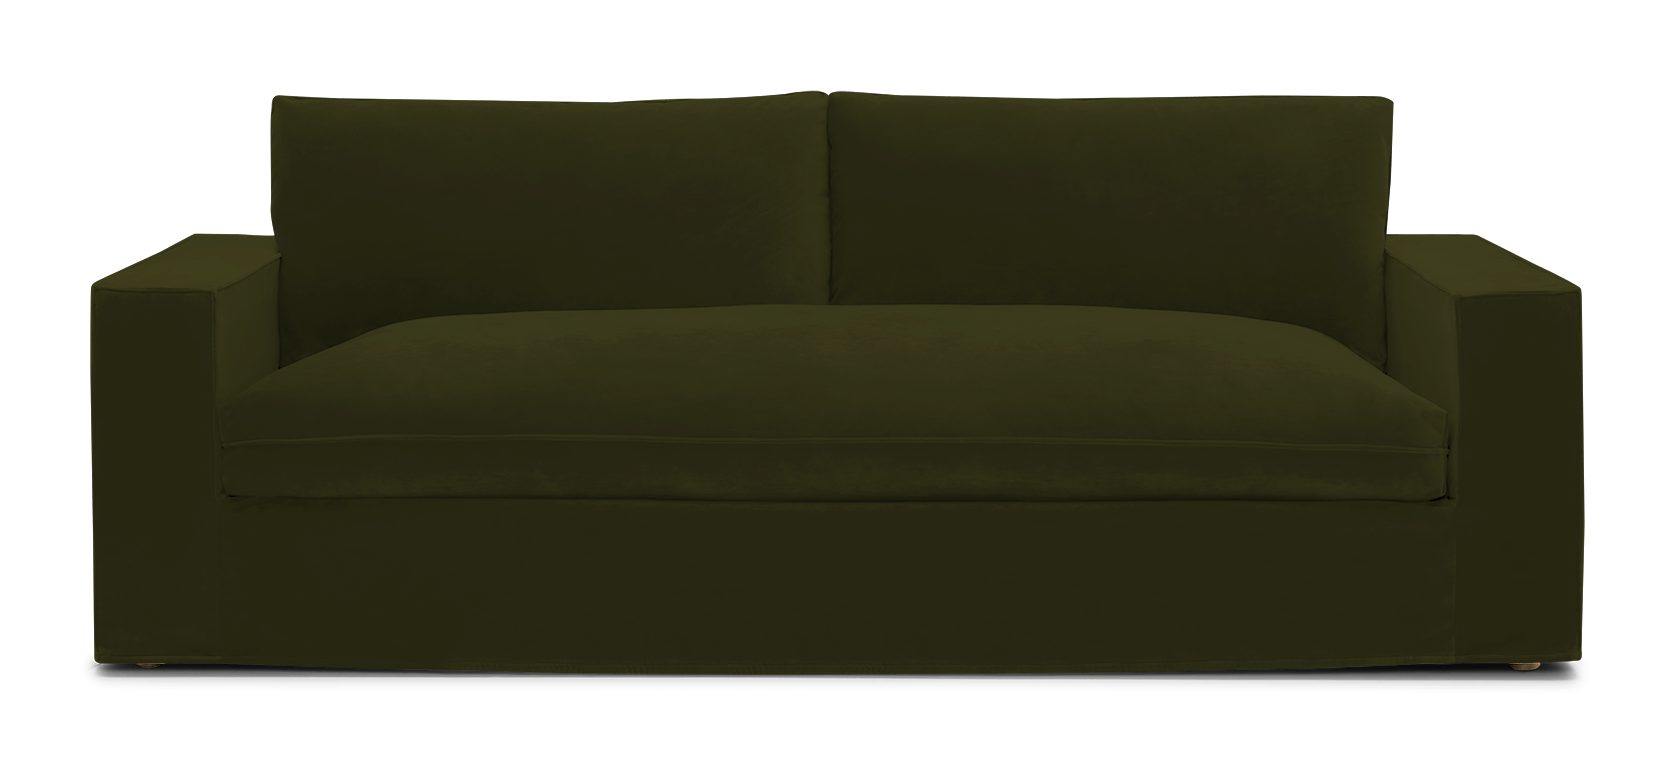 goldie slipcovered sofa faithful olive